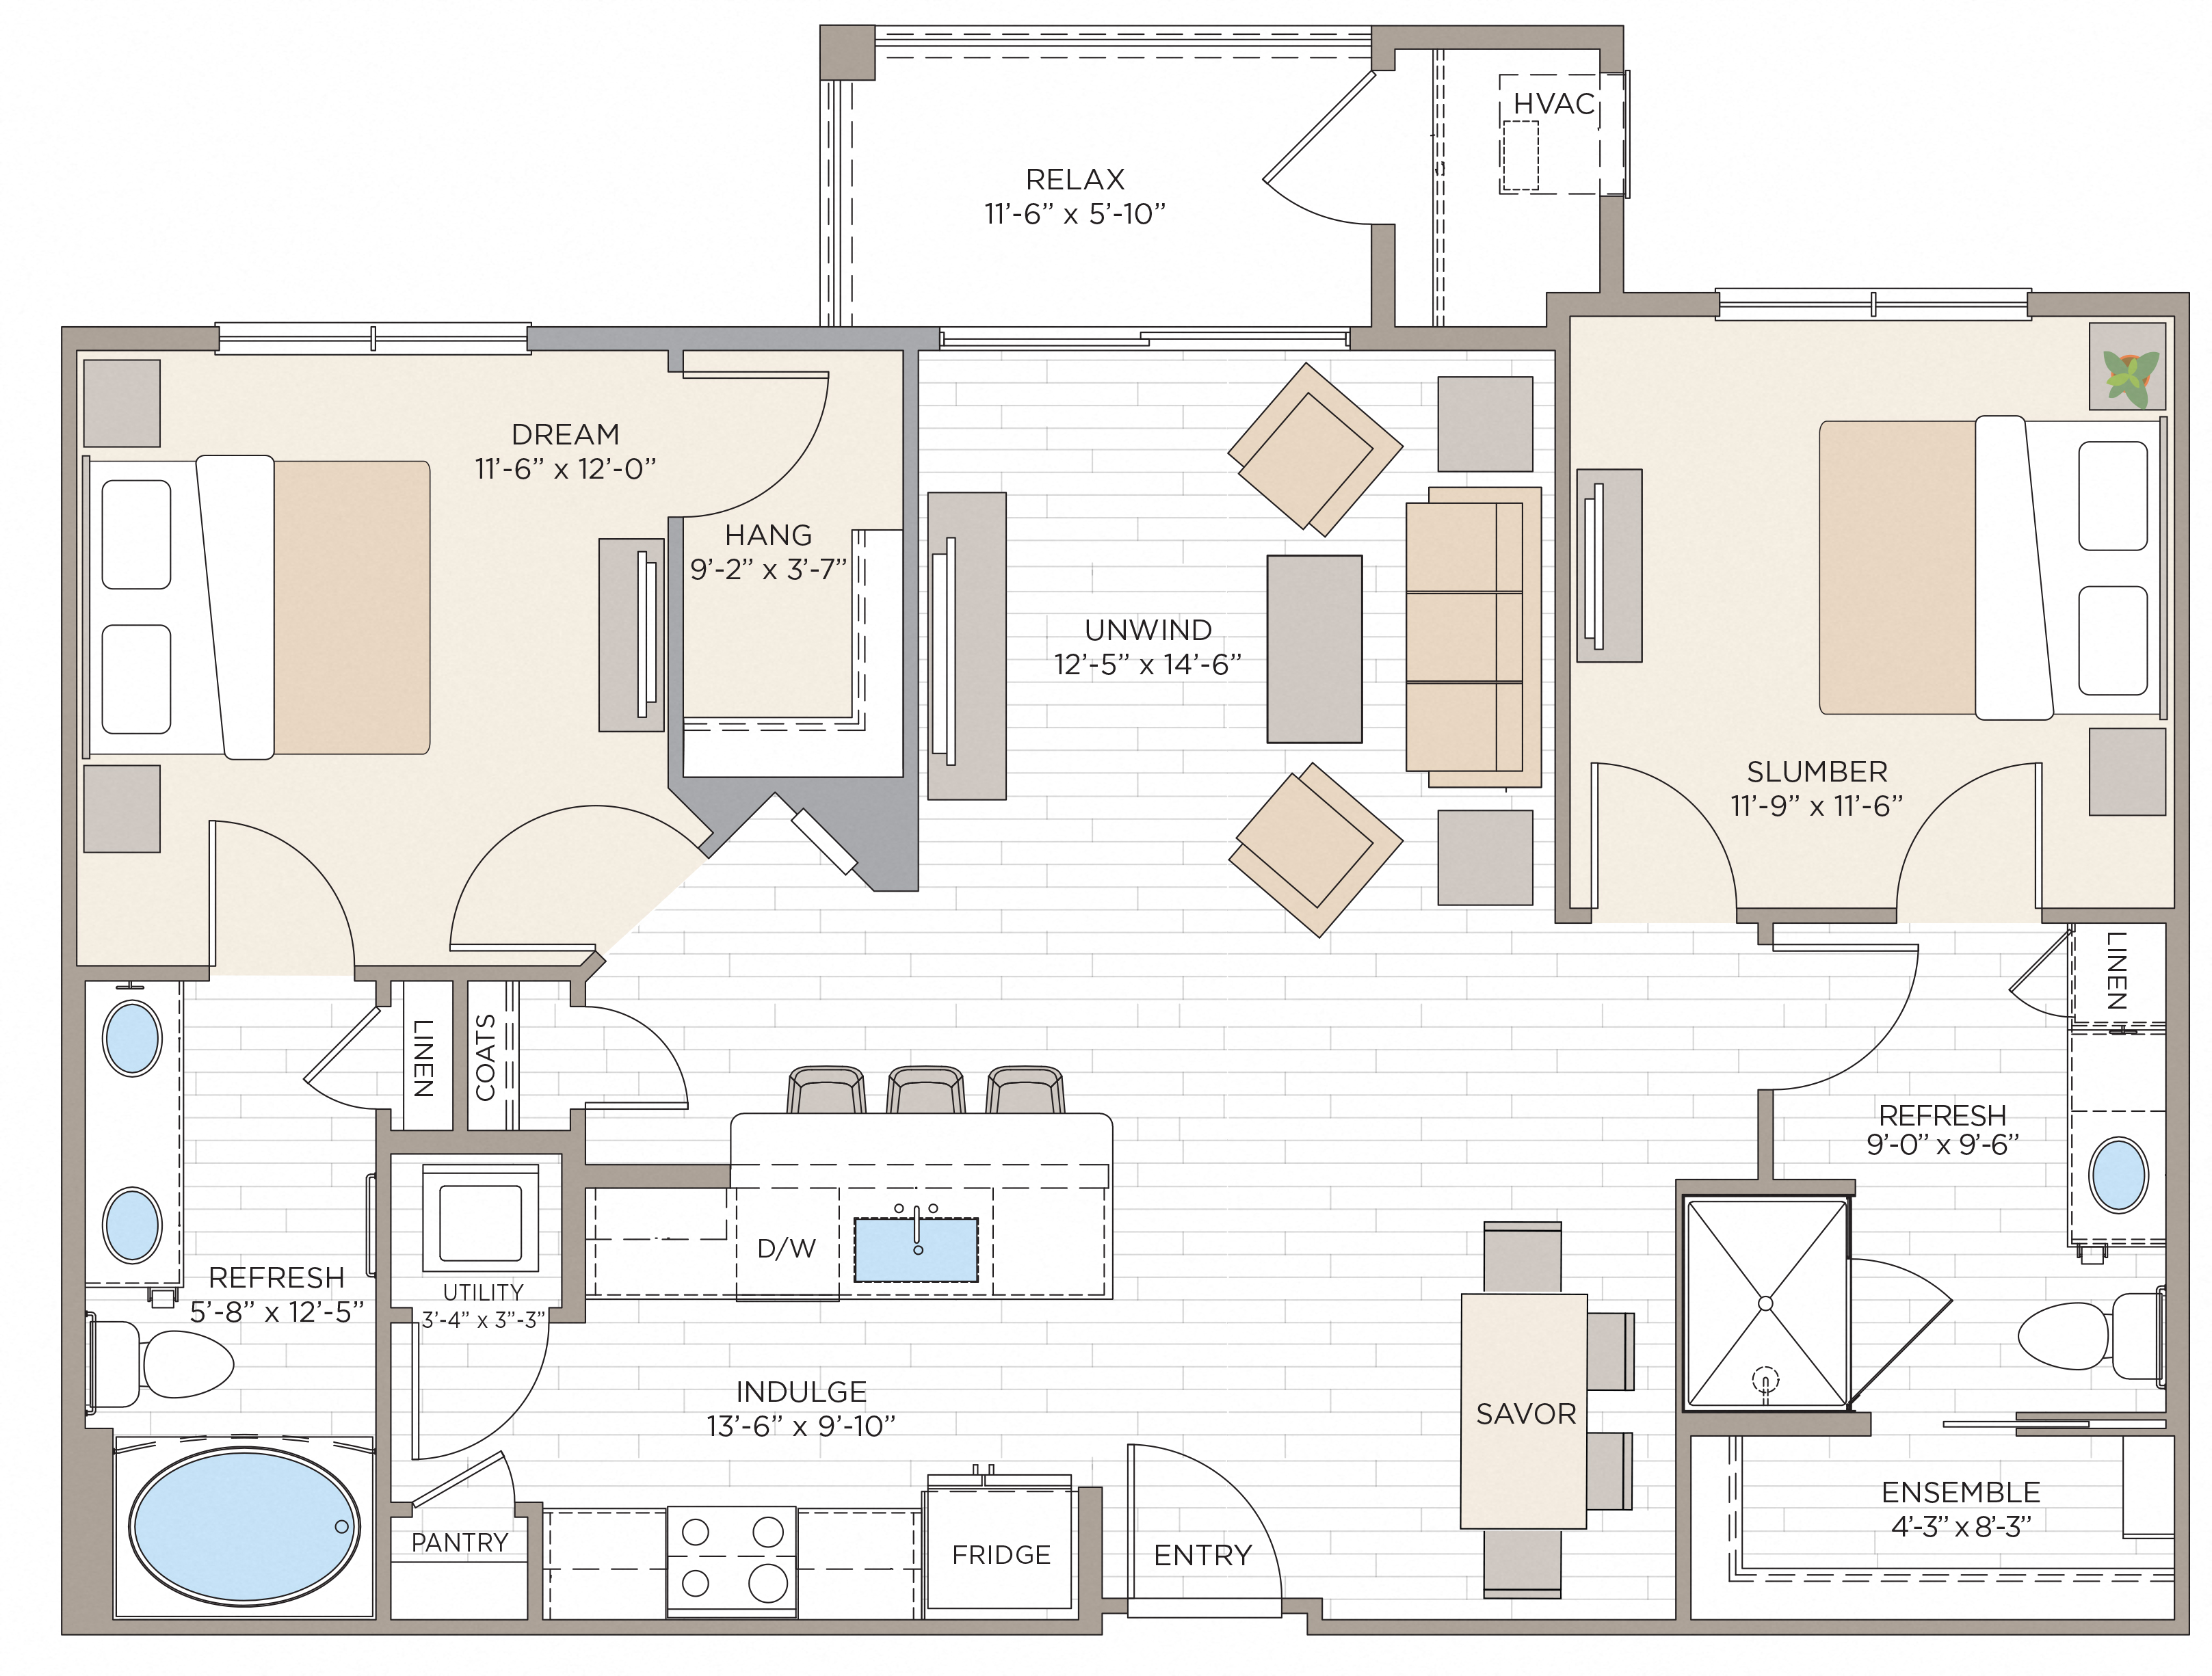 Floorplan for Apartment #08115, 2 bedroom unit at Halstead Maynard Crossing